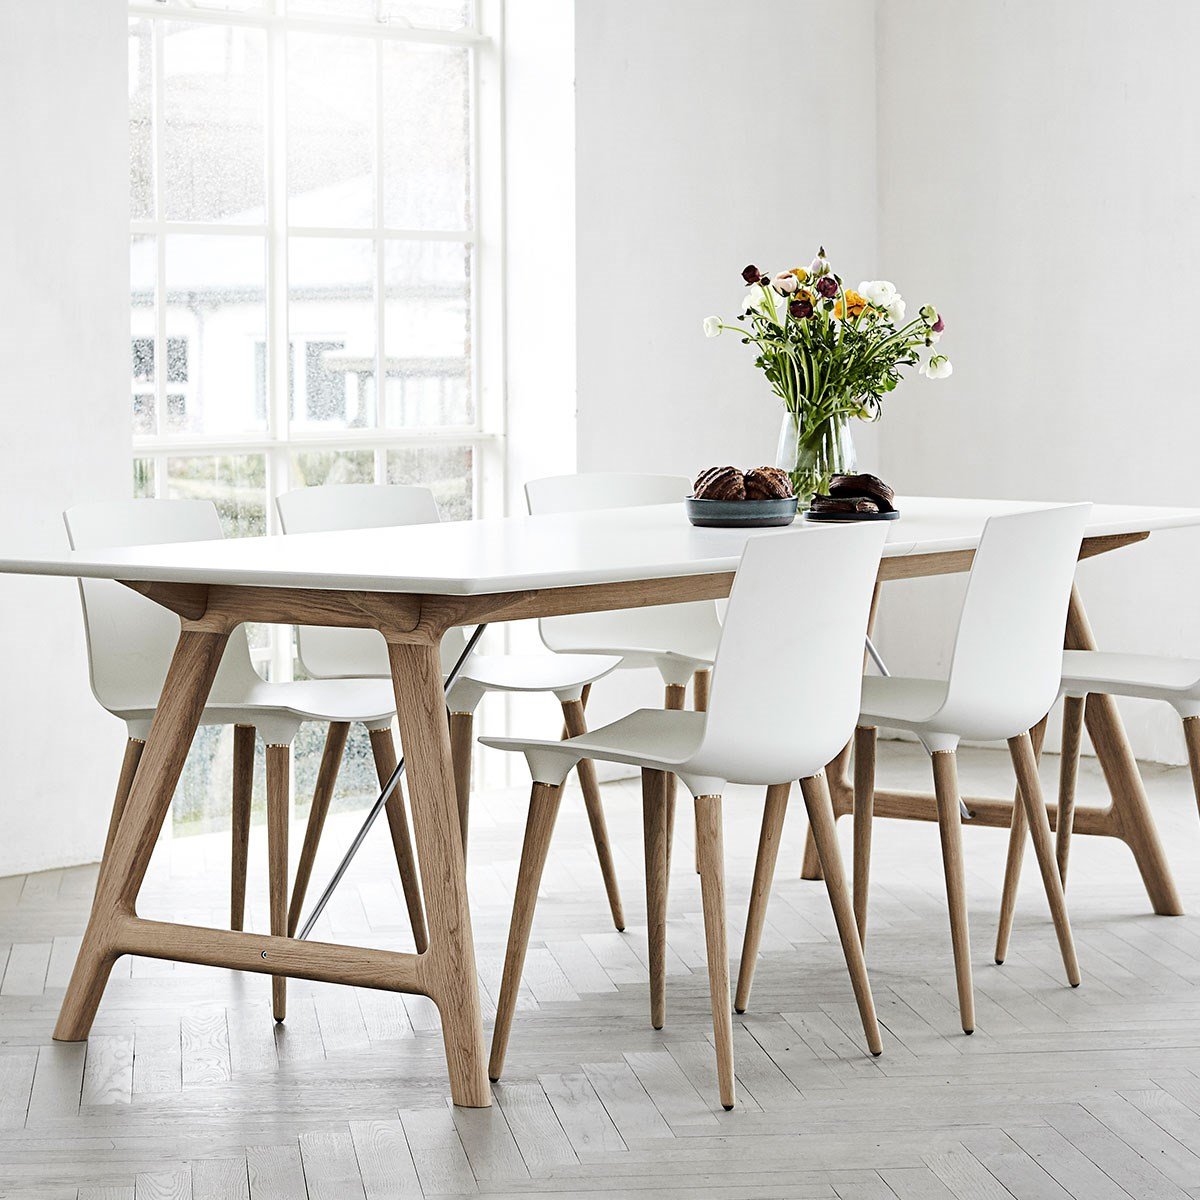 Andersen Furniture T7 Udtræksbord i Hvid Laminat, Sæbet Eg Understel, 220cm